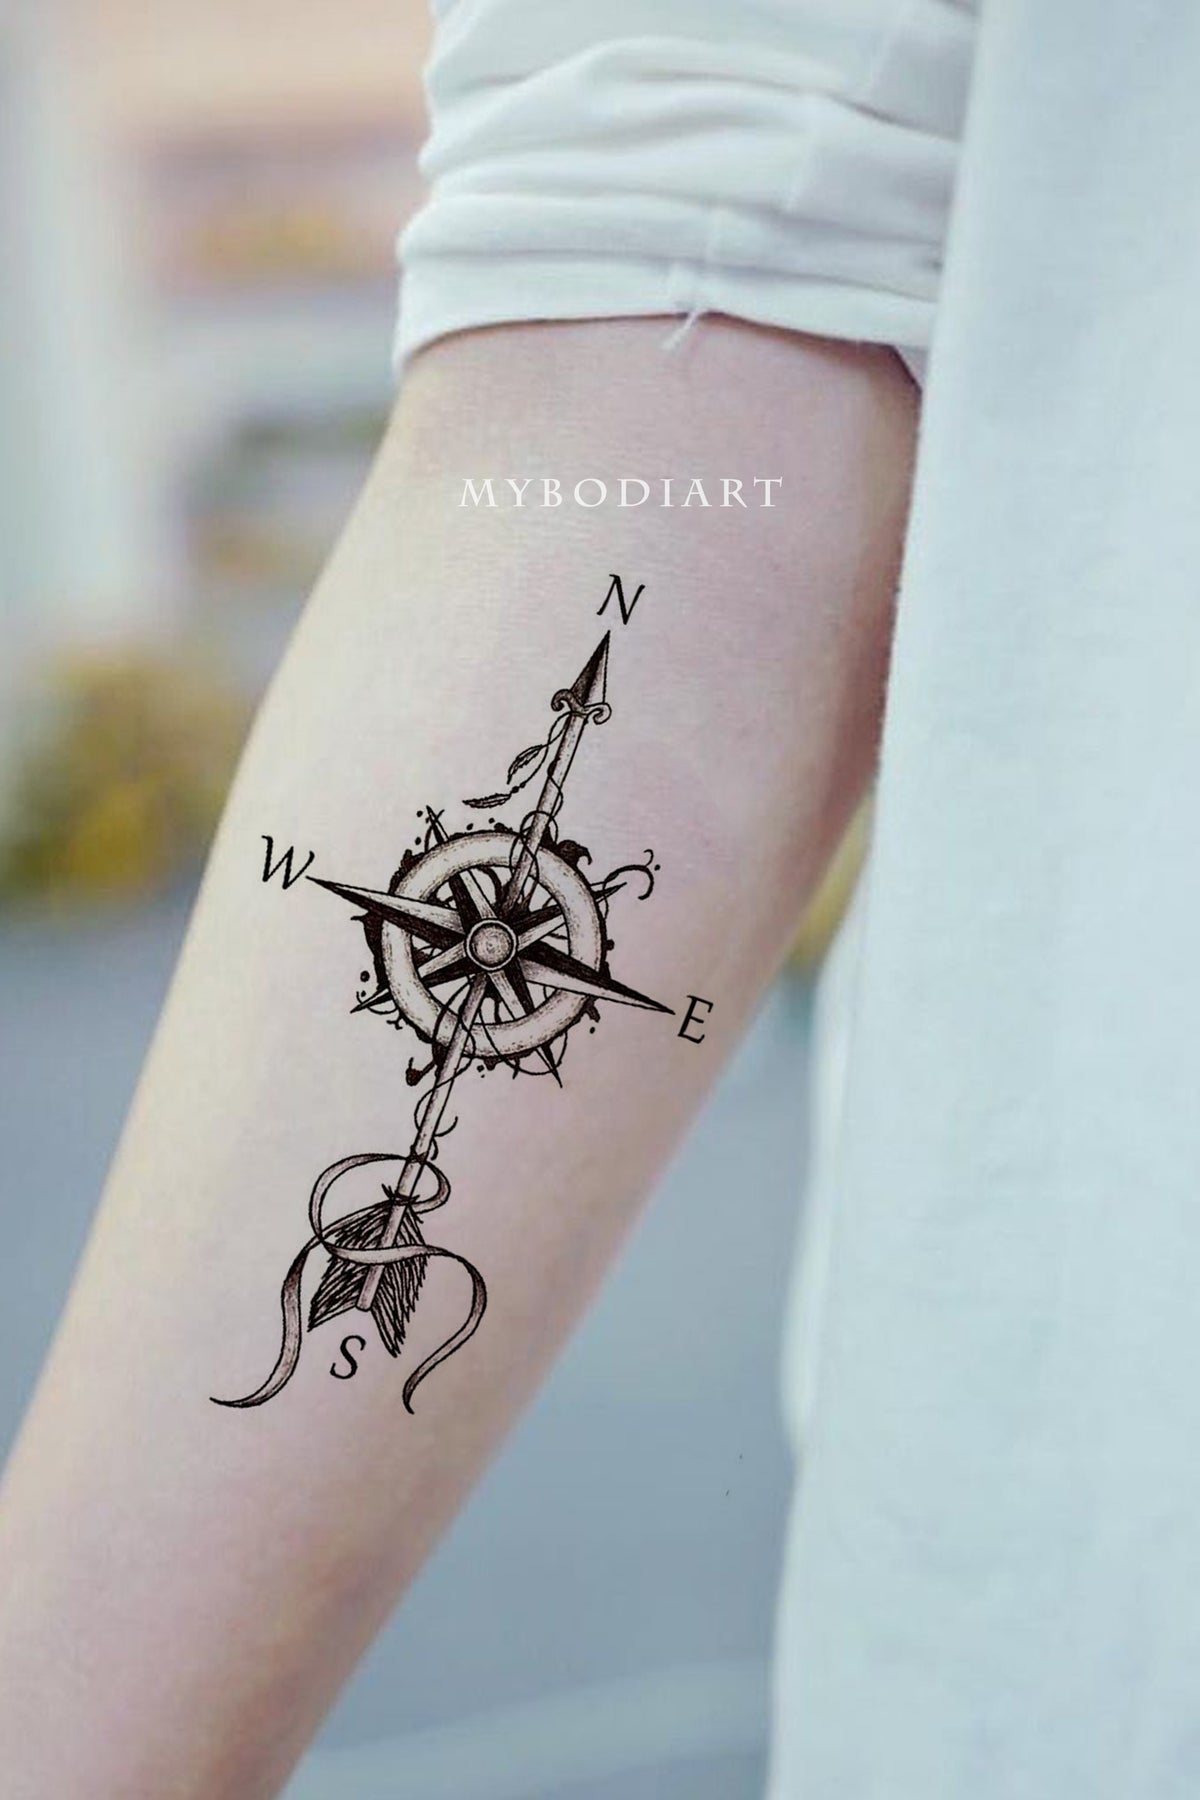 Wrist tatoo : r/TattooDesigns